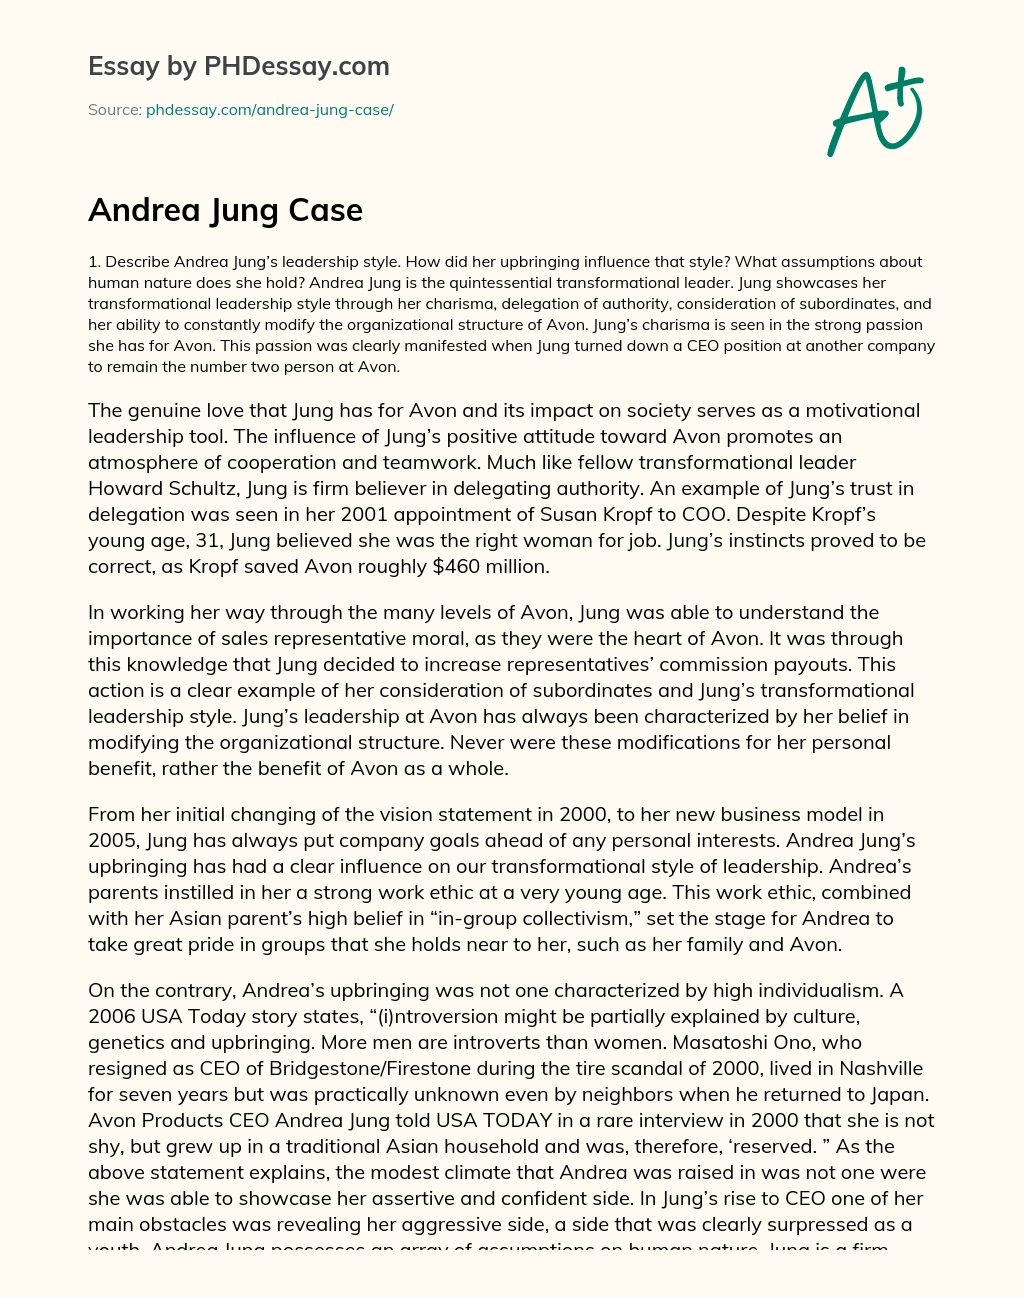 Andrea Jung Case essay